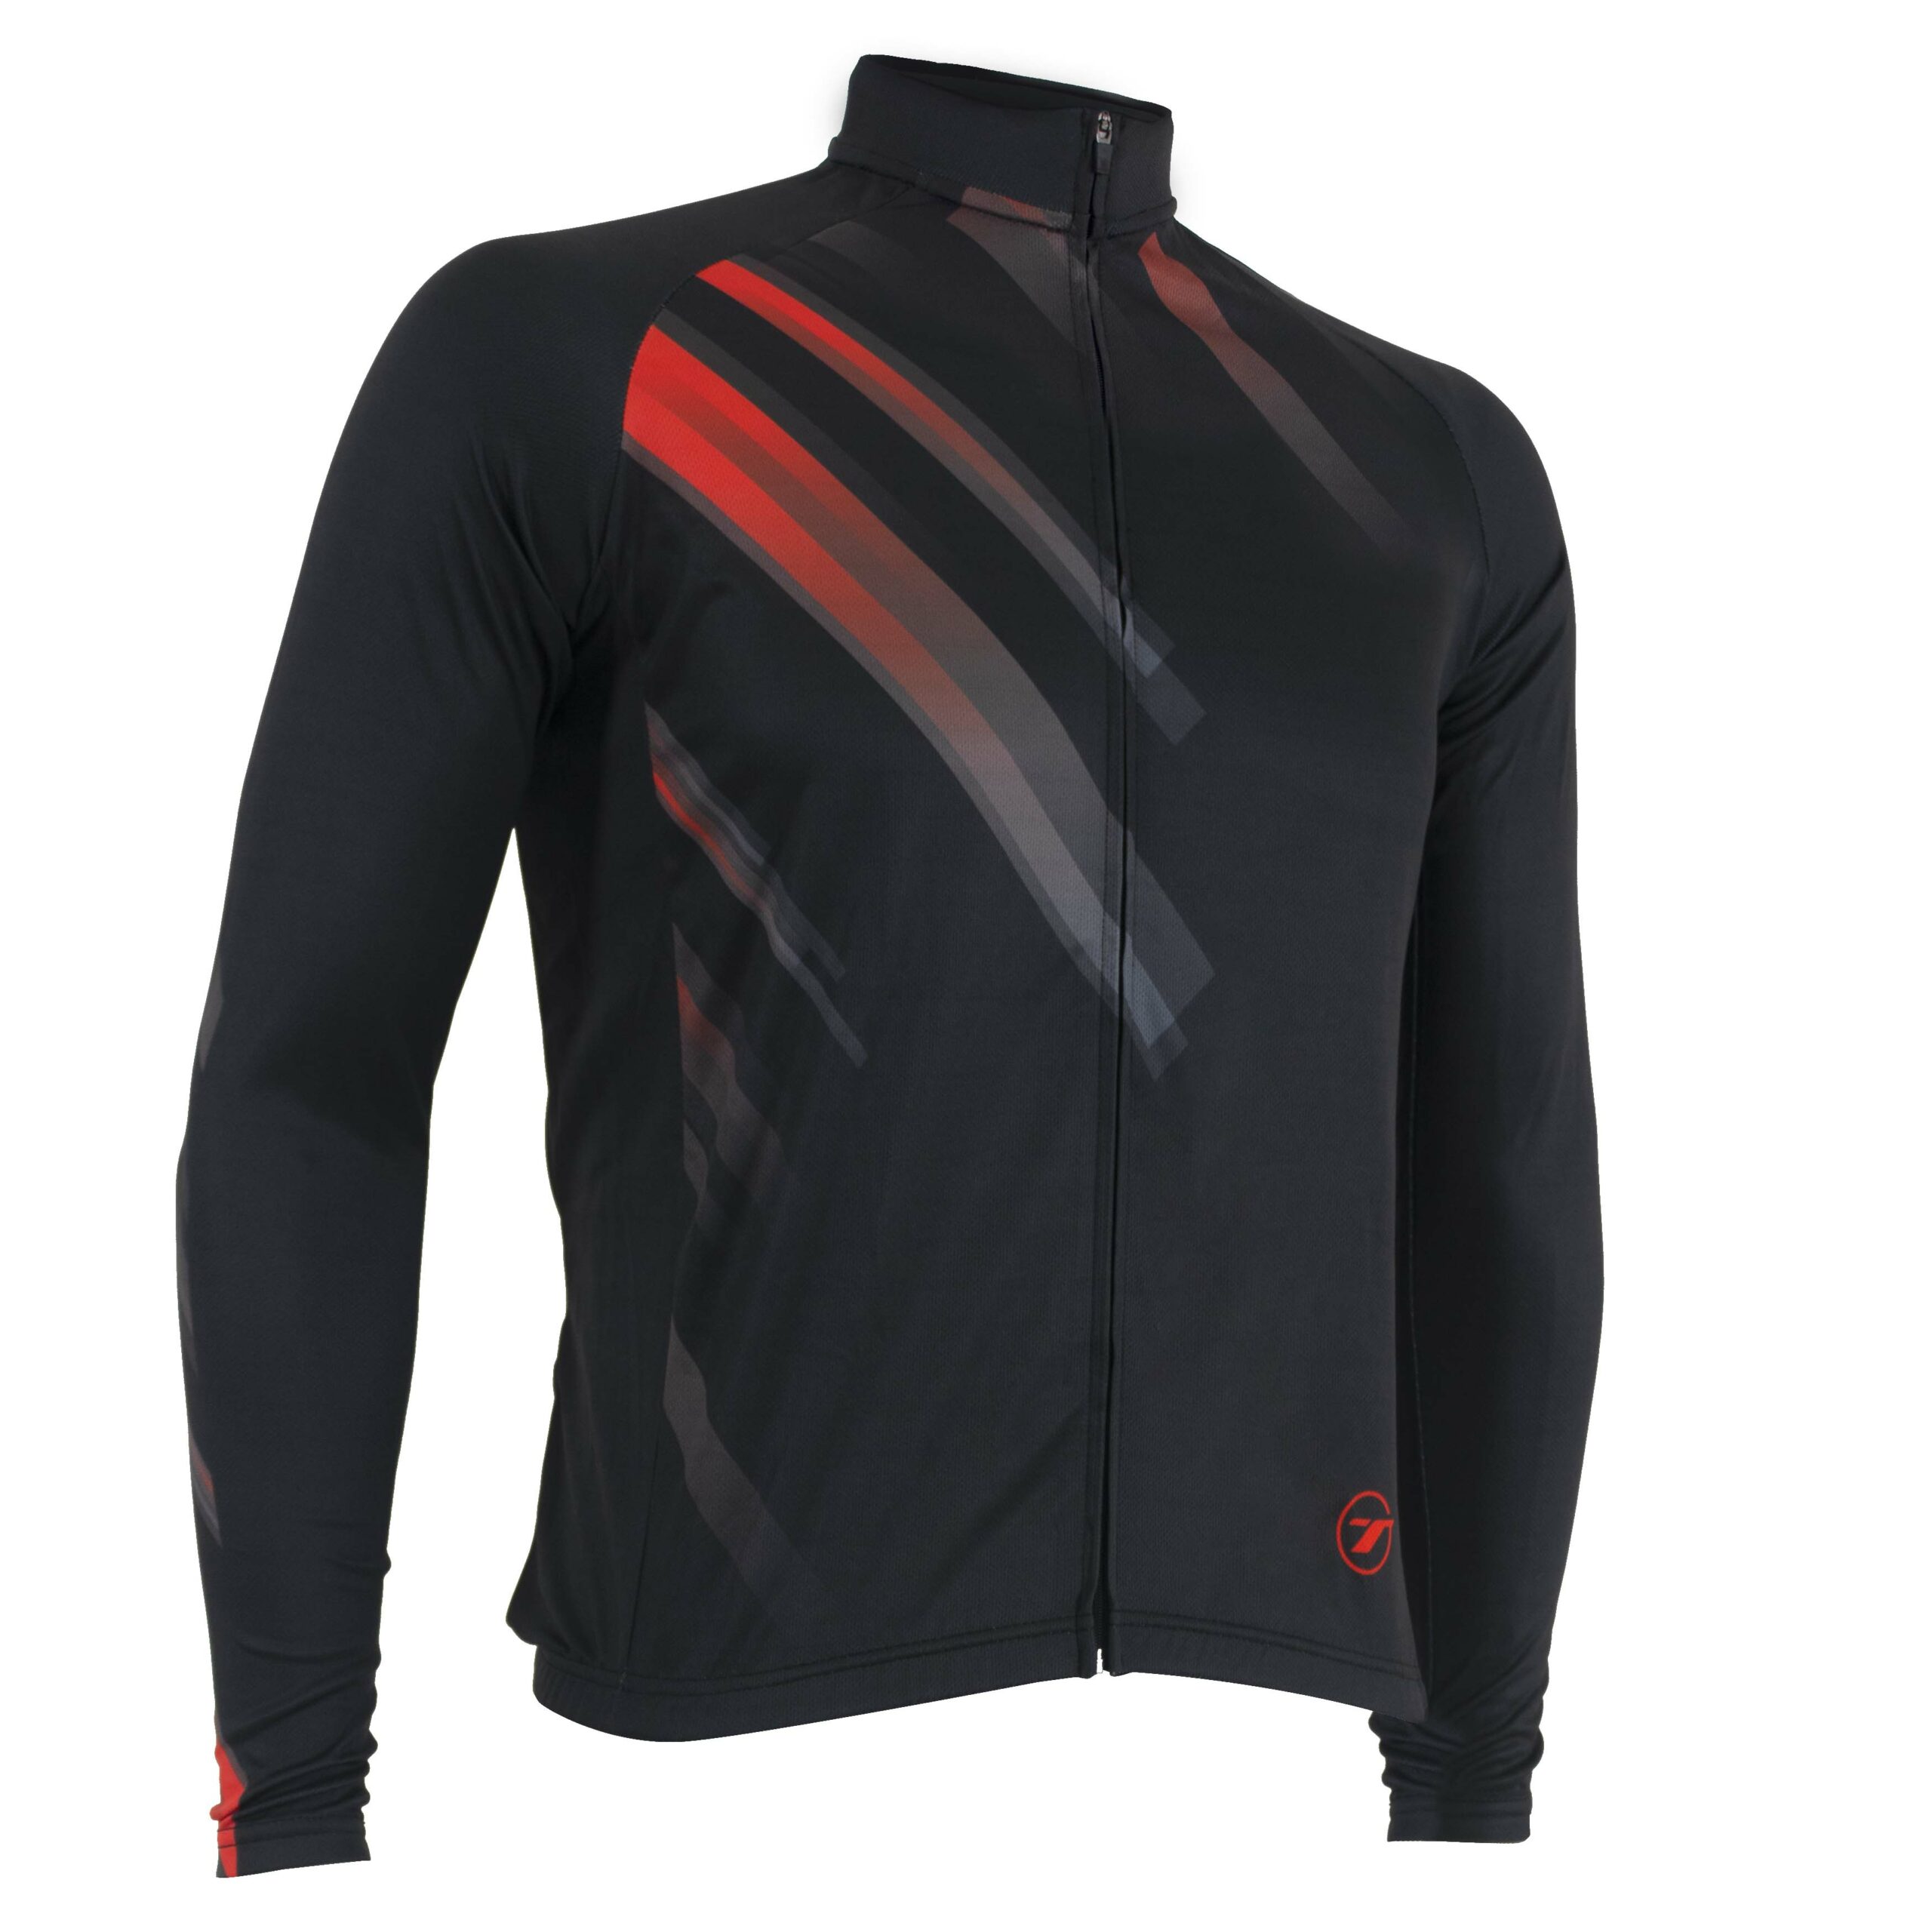 Camisa manga longa para ciclismo SUNNY | RIDE LINE - Preto/Vermelho, P